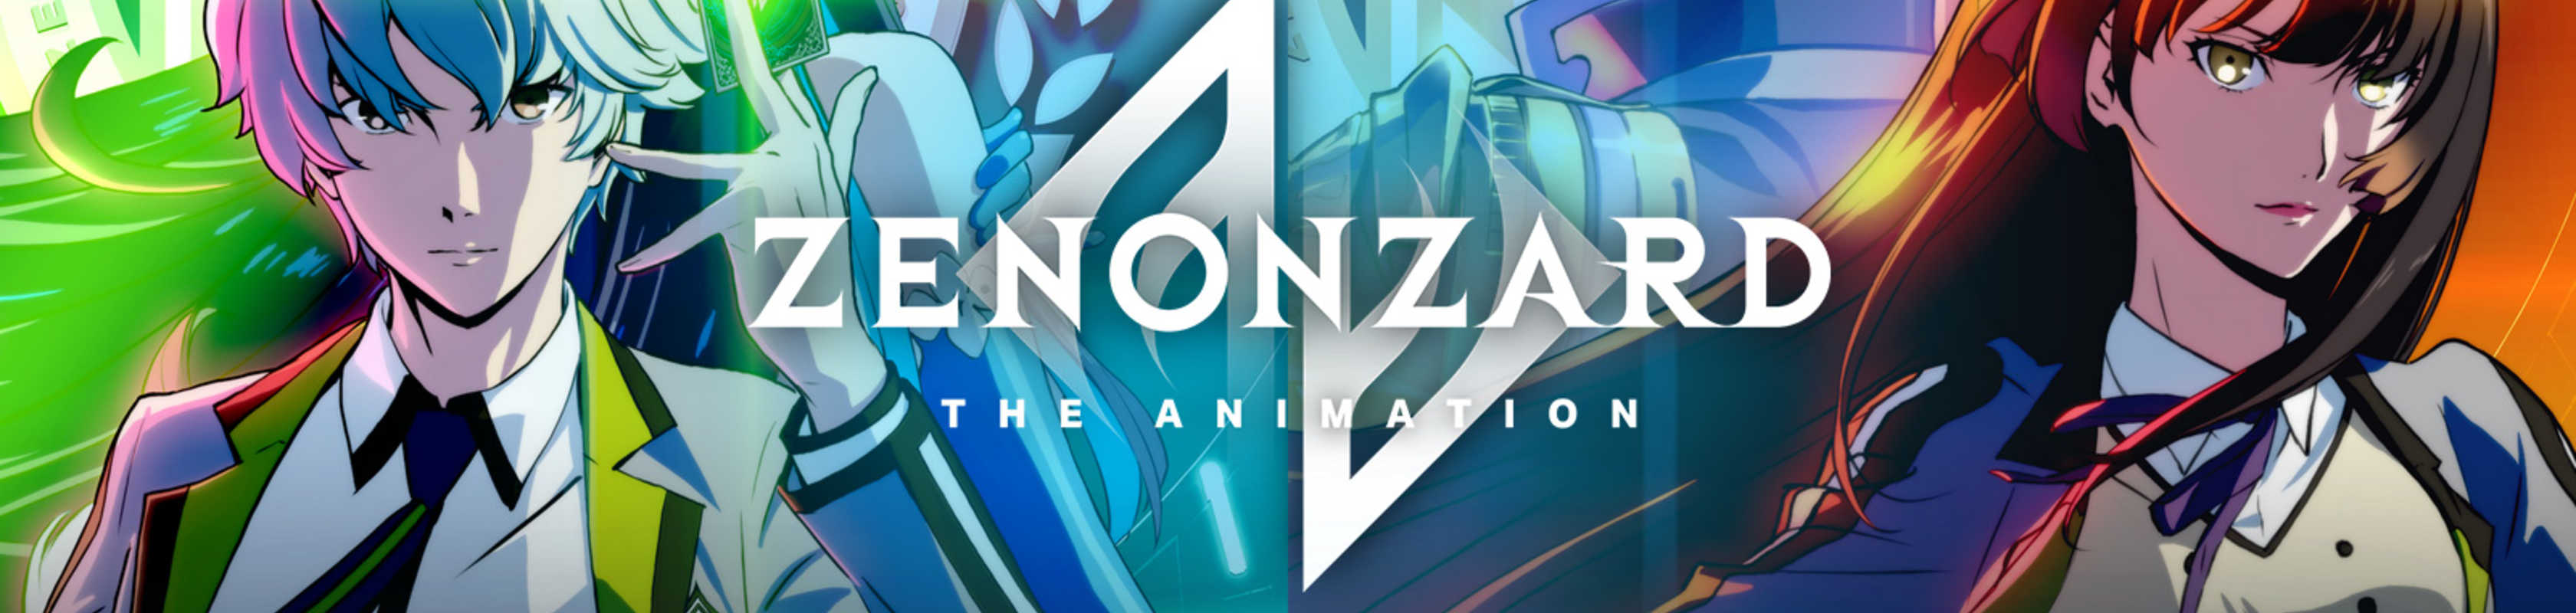 Zenonzard: The Animation anime HD wallpaper | Pxfuel